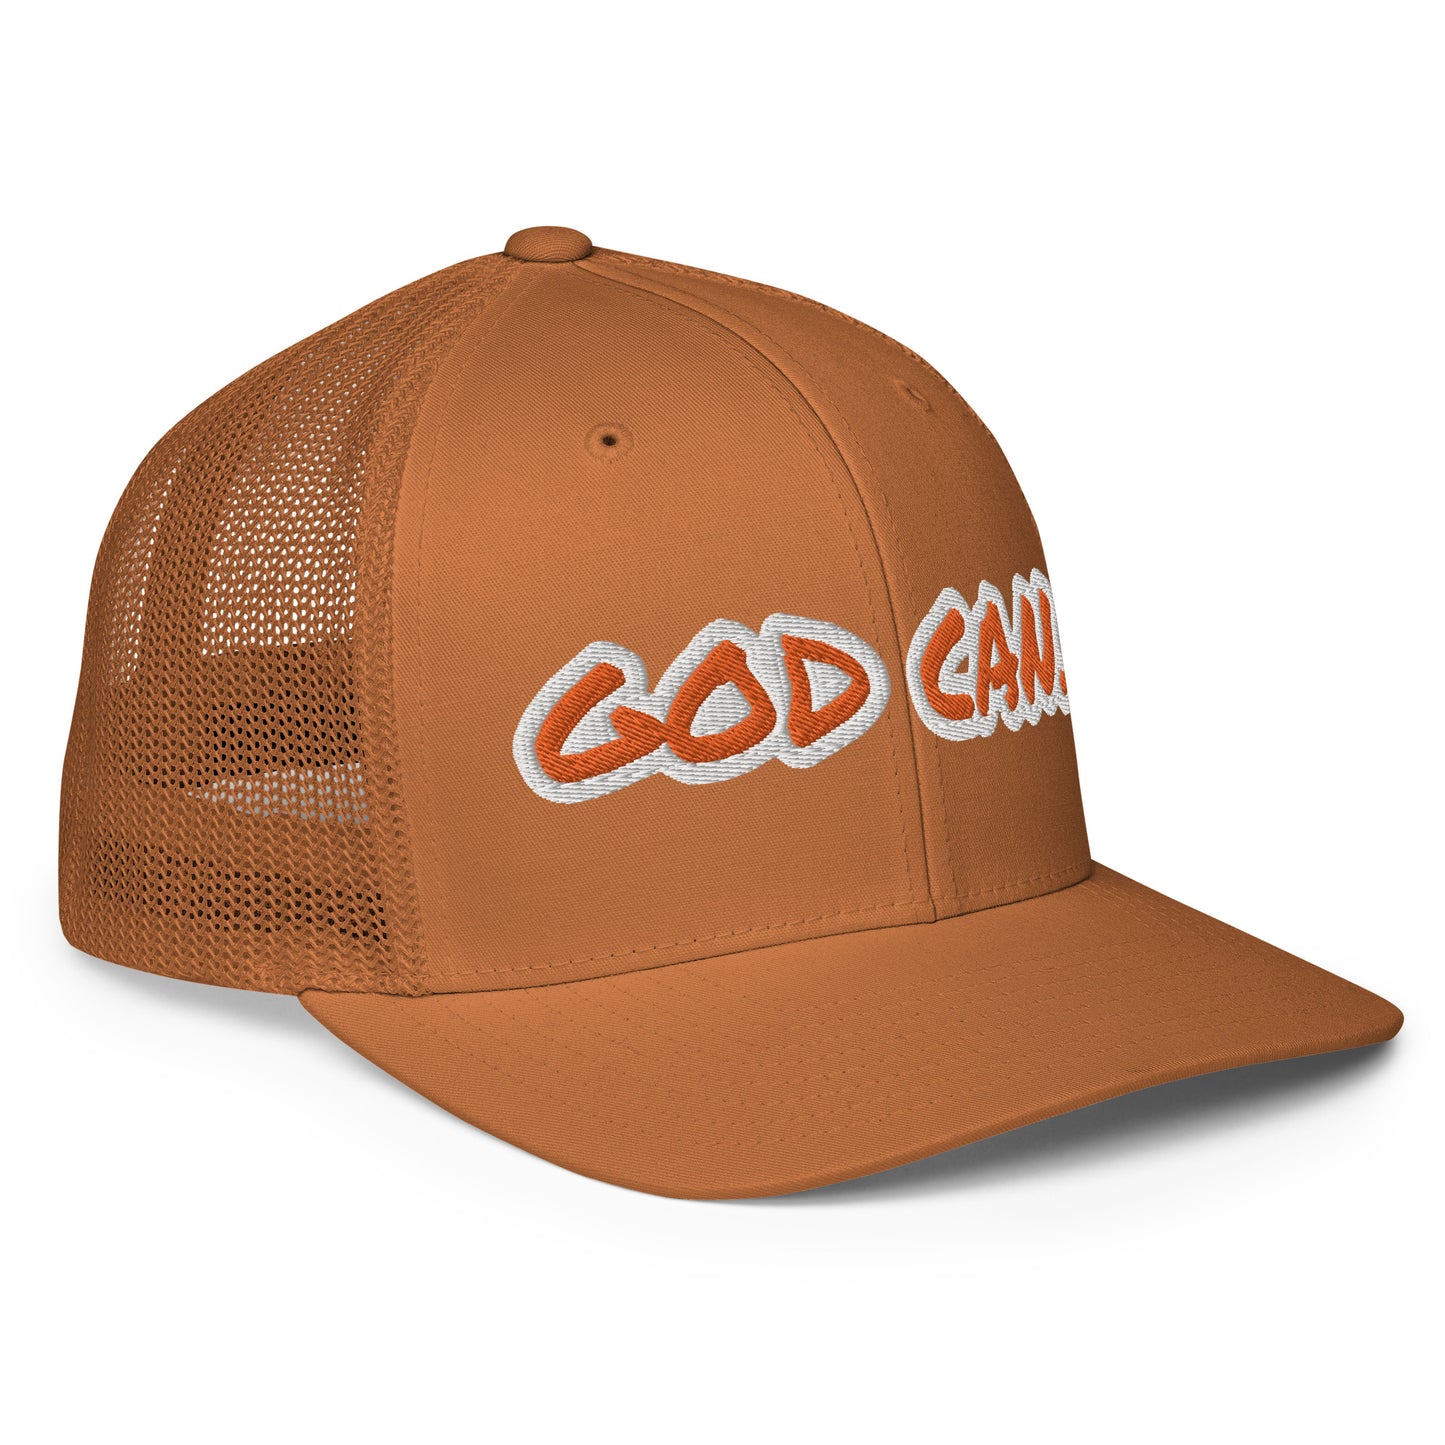 God Can.- Closed-back trucker cap